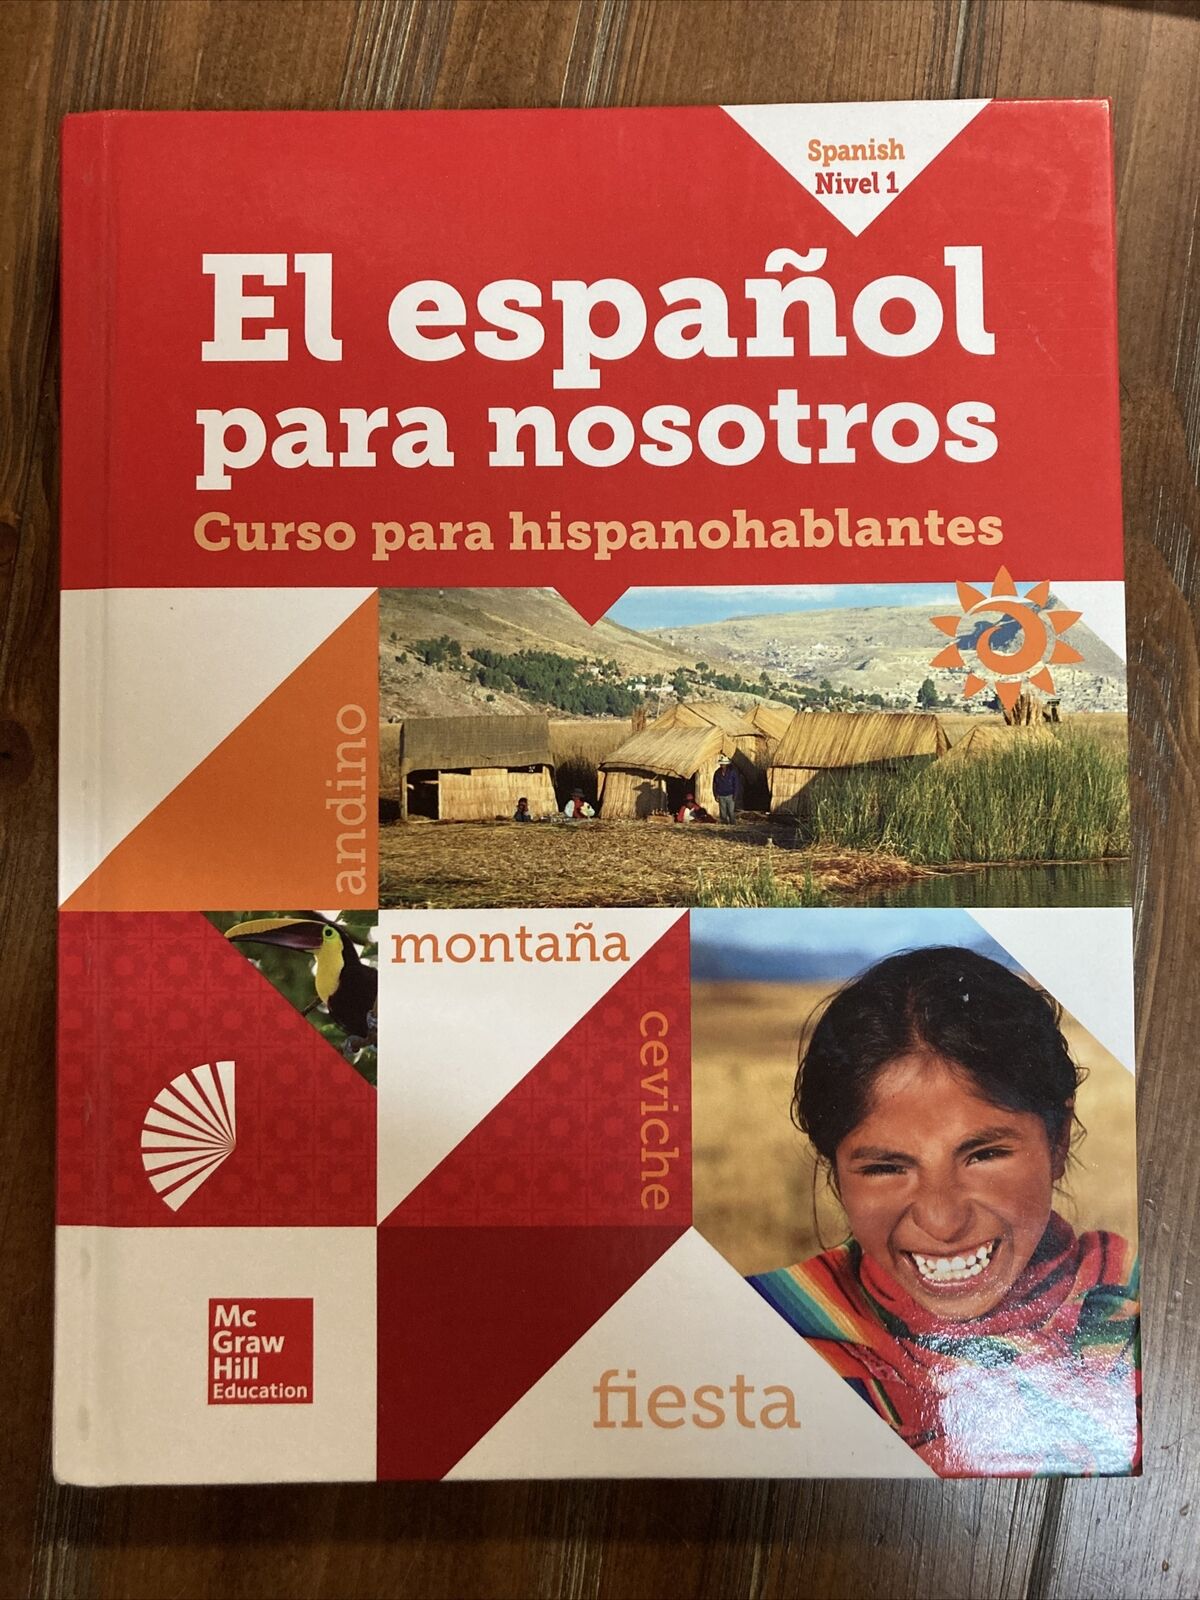 El espanol para nosotros, curso para hispanohablantes, Spanish nivel 1, McGraw